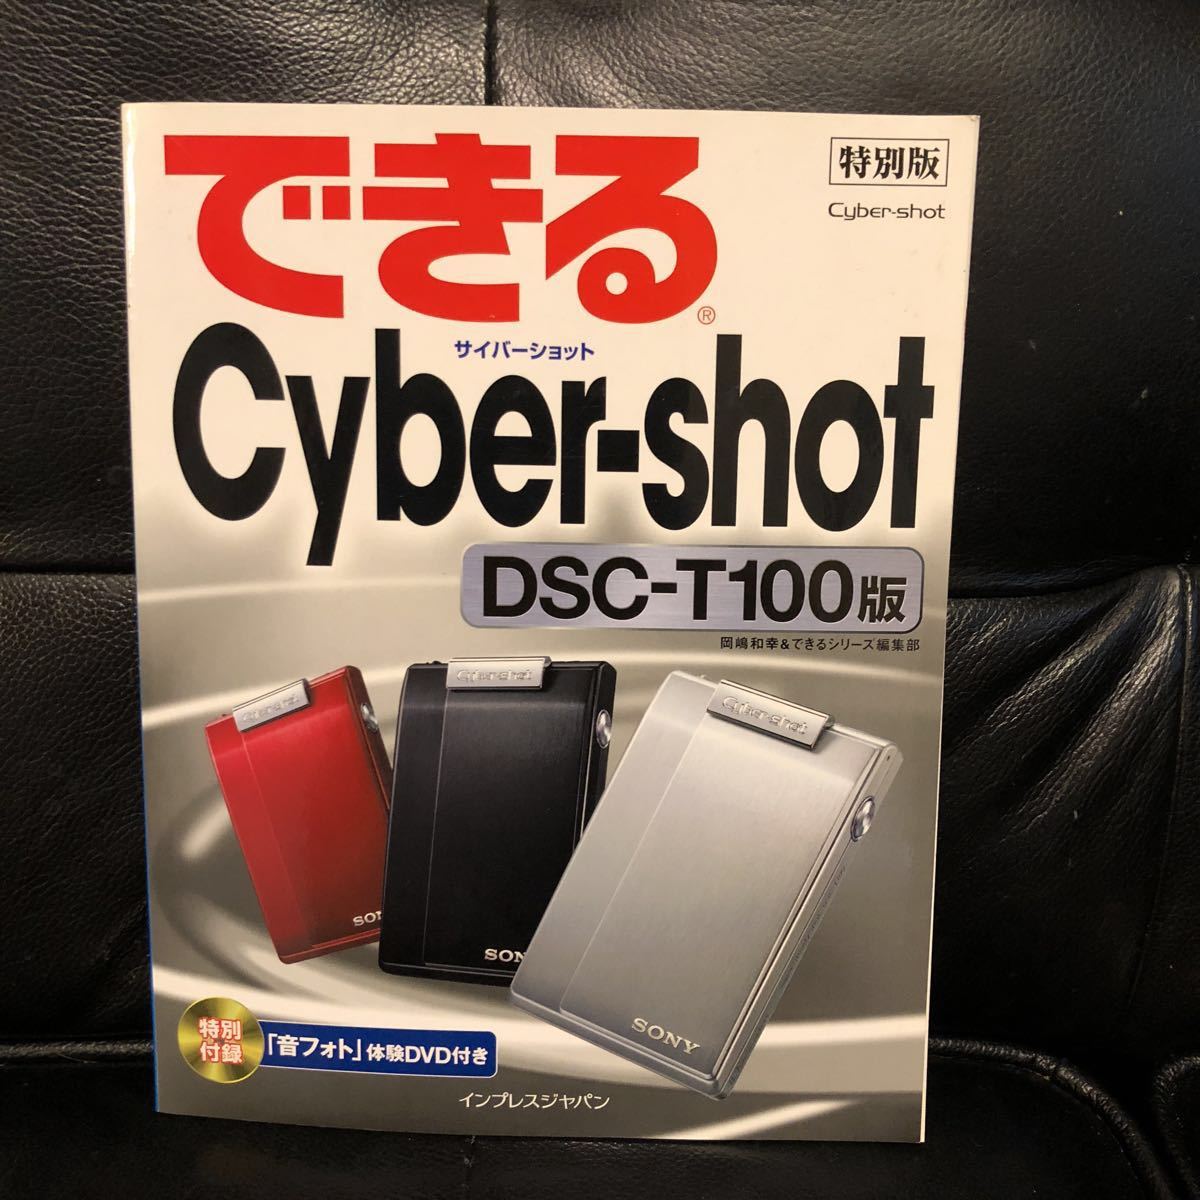 ★できる Cyber-shot DSC-T100版 / 中古本★_画像1